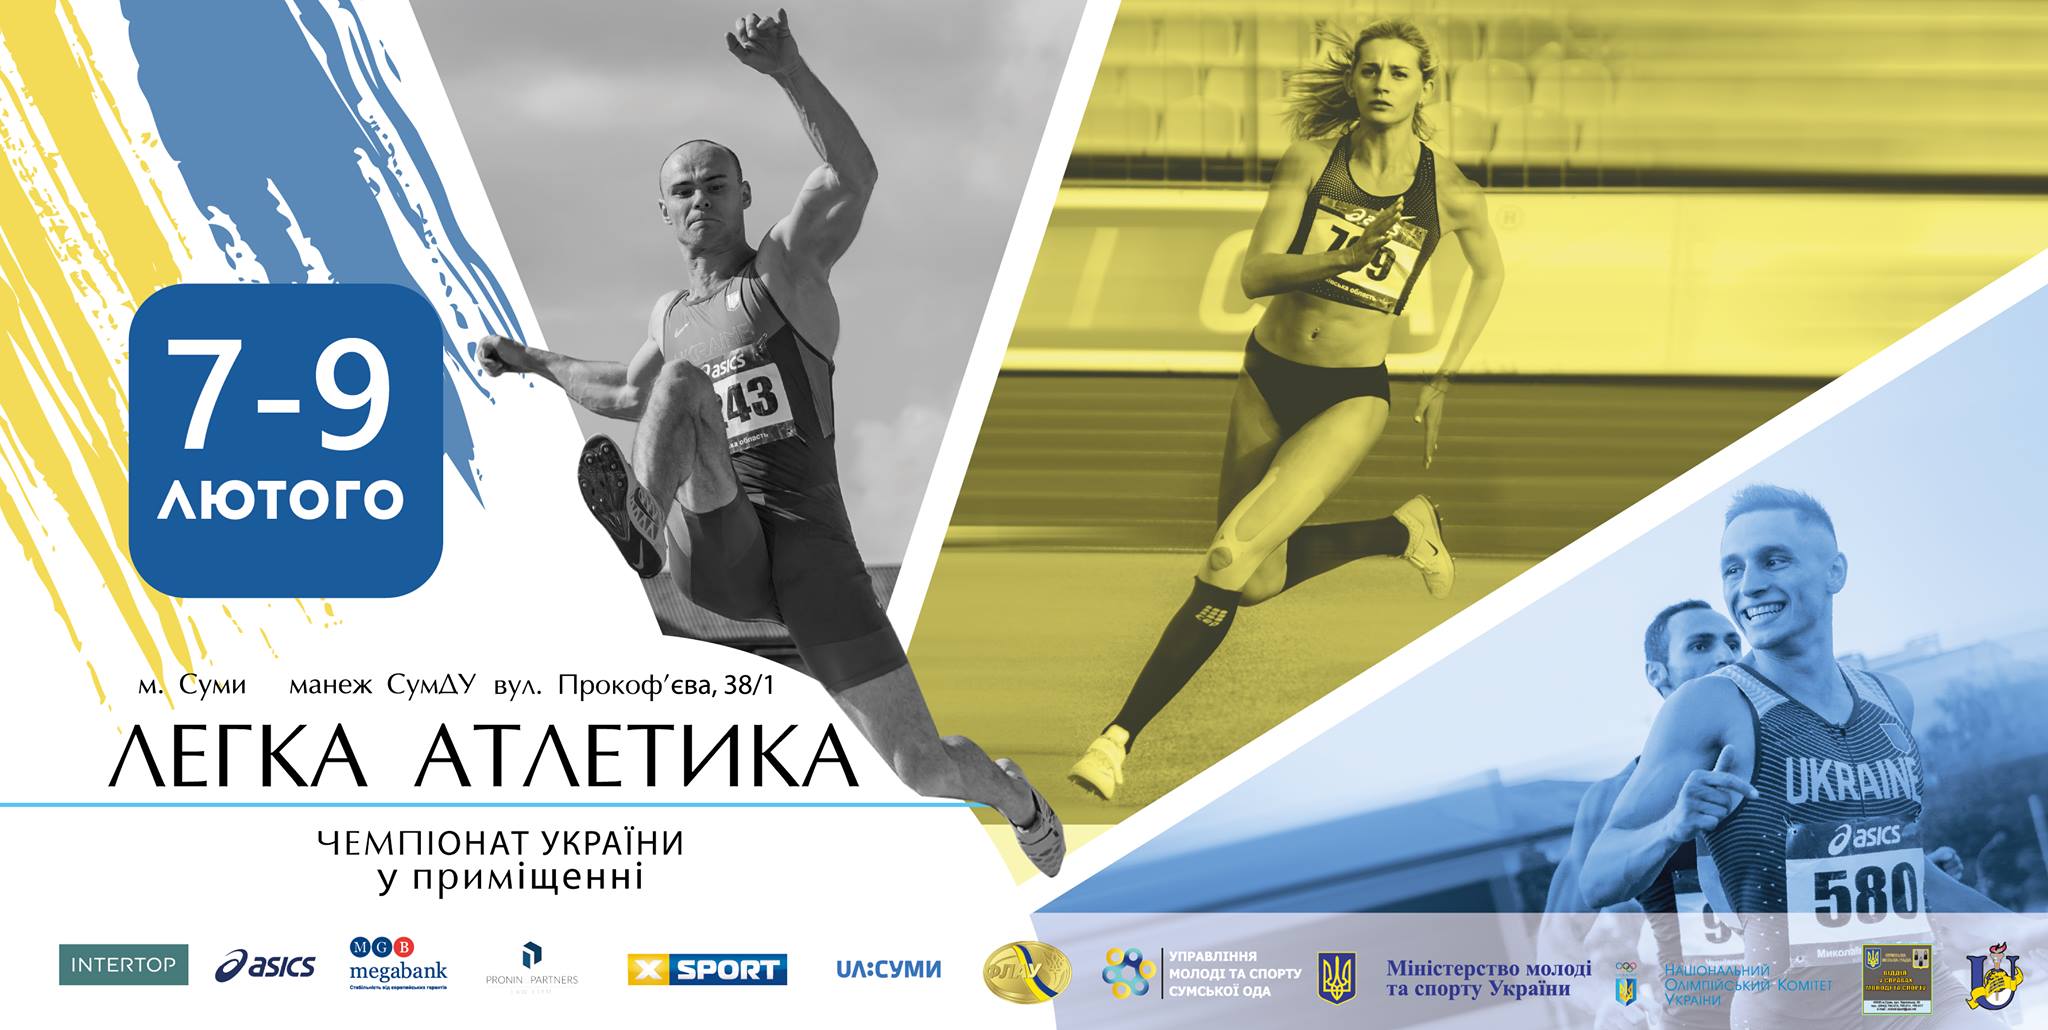  чемпіонат України з легкої атлетики  у приміщенні.